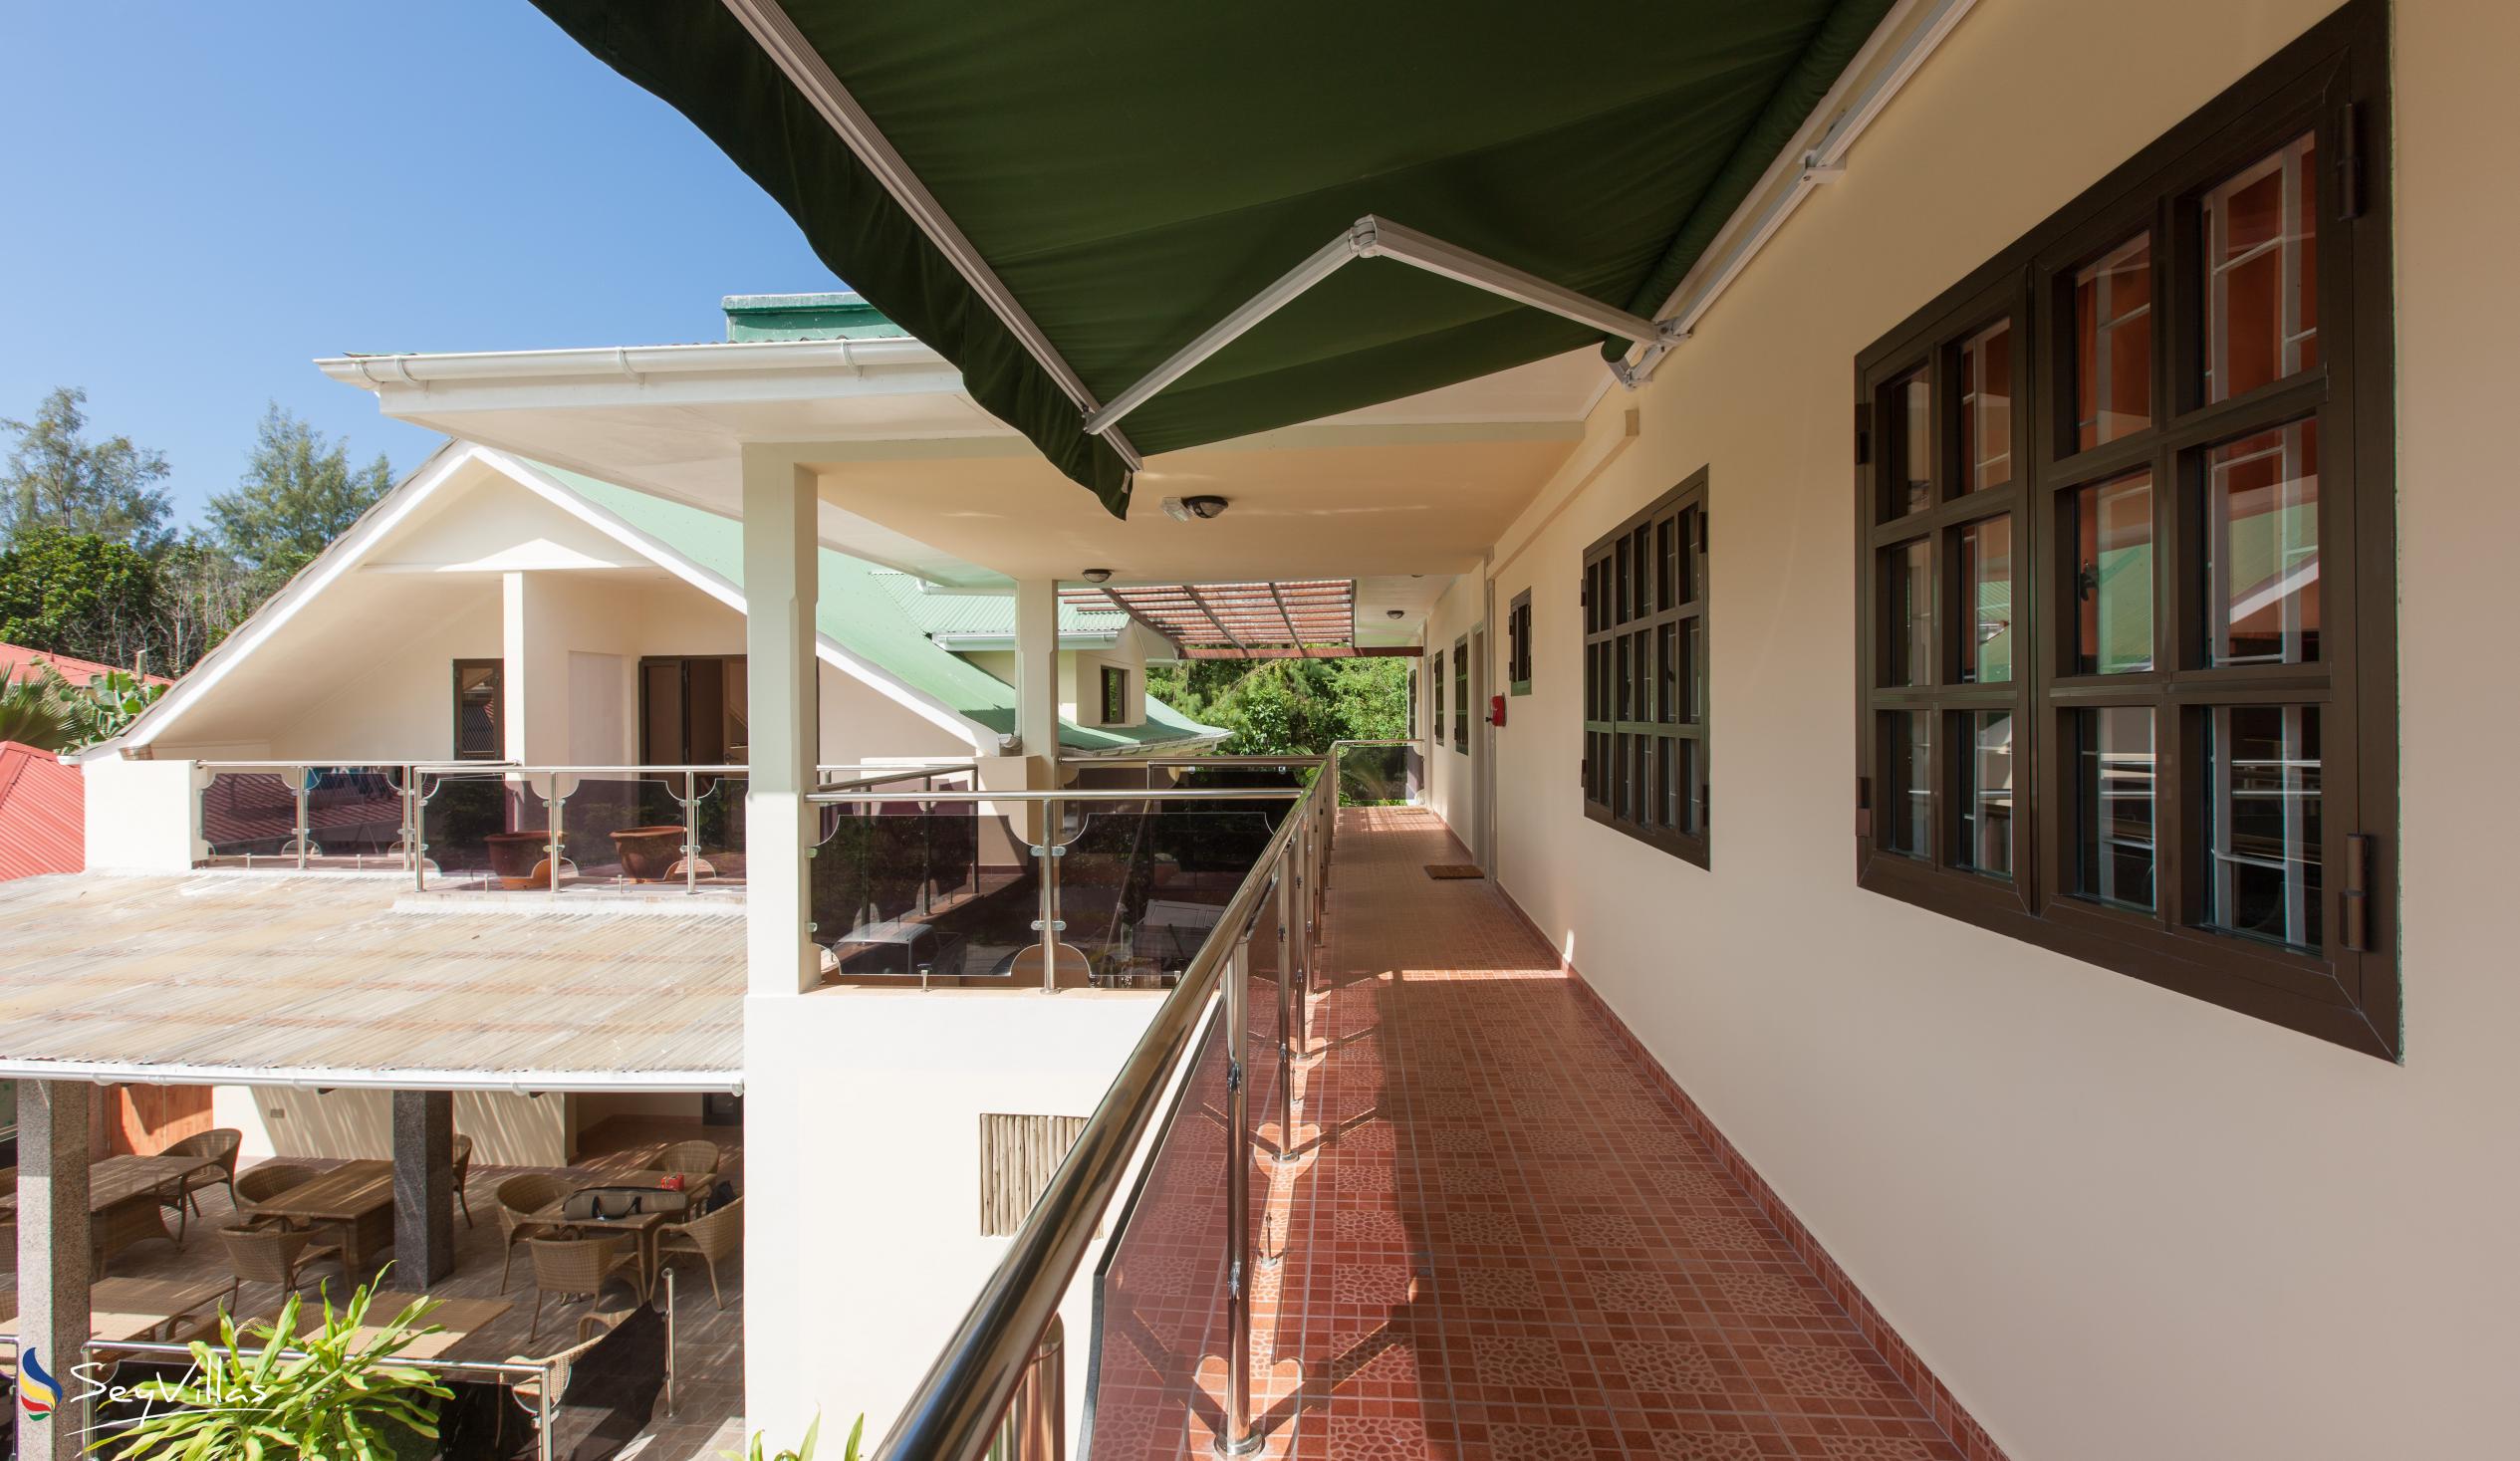 Foto 18: Chez Bea Villa - Innenbereich - Praslin (Seychellen)